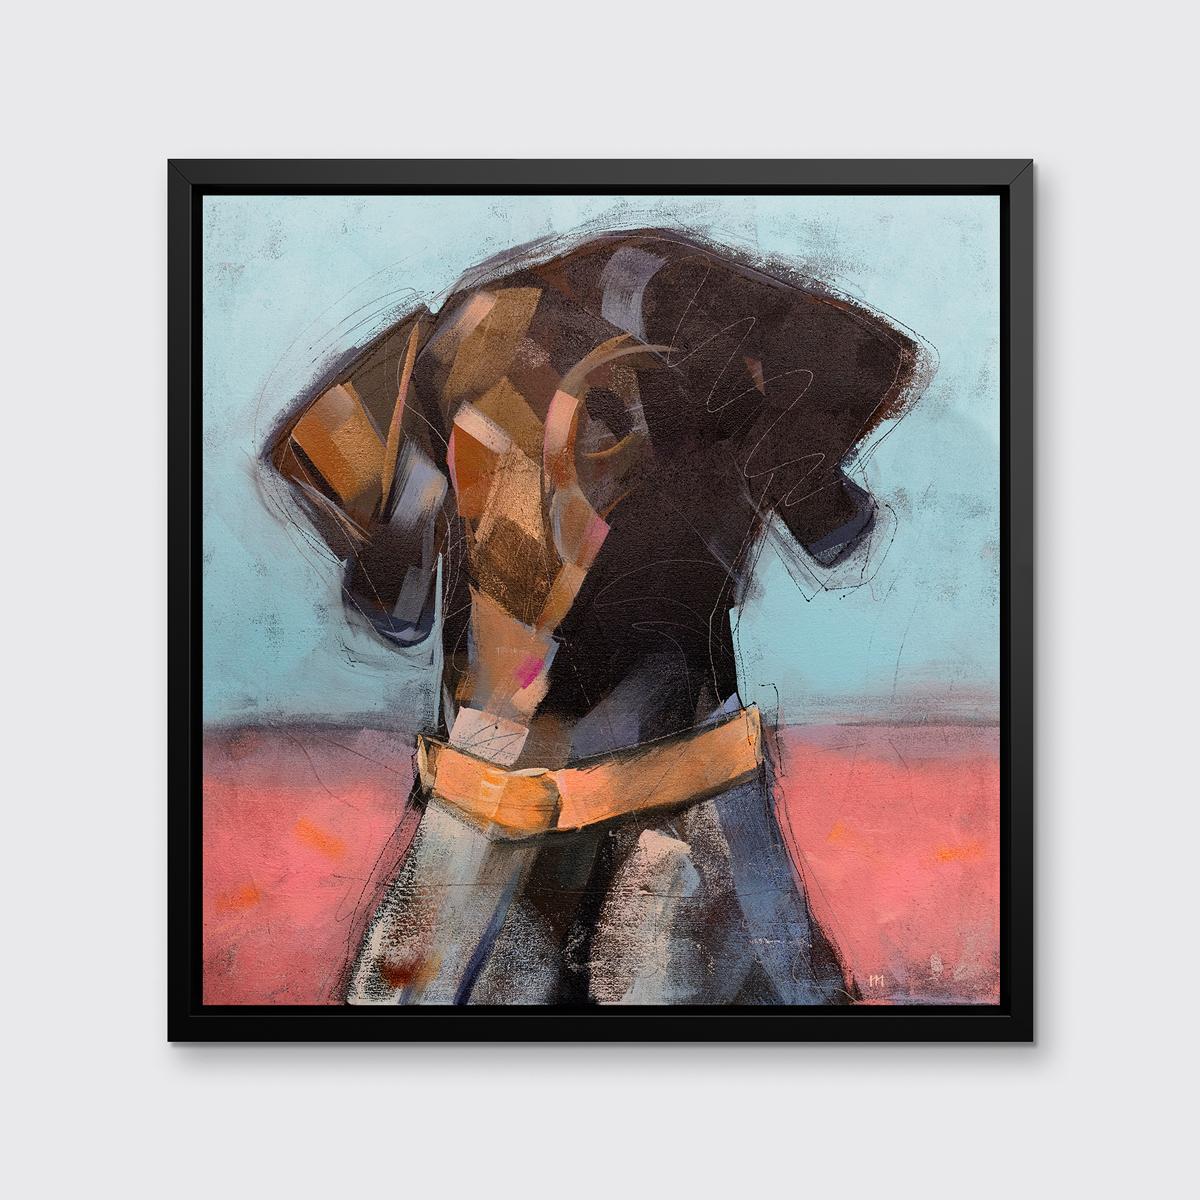 Dieser abstrahierte Druck eines Hundes des Künstlers Russell Miyaki zeigt eine lebhafte Farbpalette mit einem braunen Hund, der von den Schultern aufwärts ein leuchtend orangefarbenes Halsband vor einem hellen, halb roten und halb blauen Hintergrund